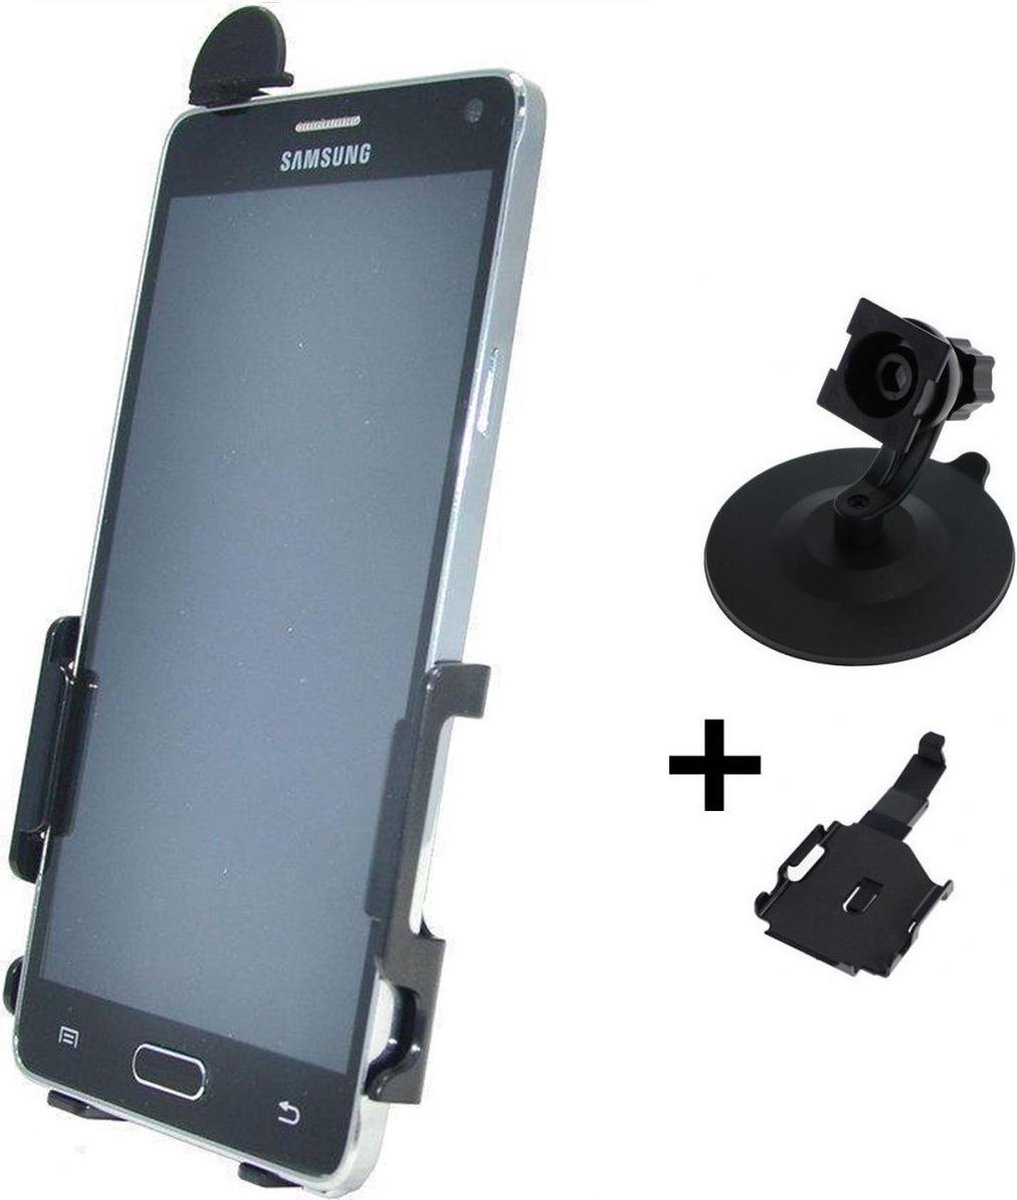 Haicom houder voor Samsung Galaxy Note 4 HI-378 - Dashboardhouder